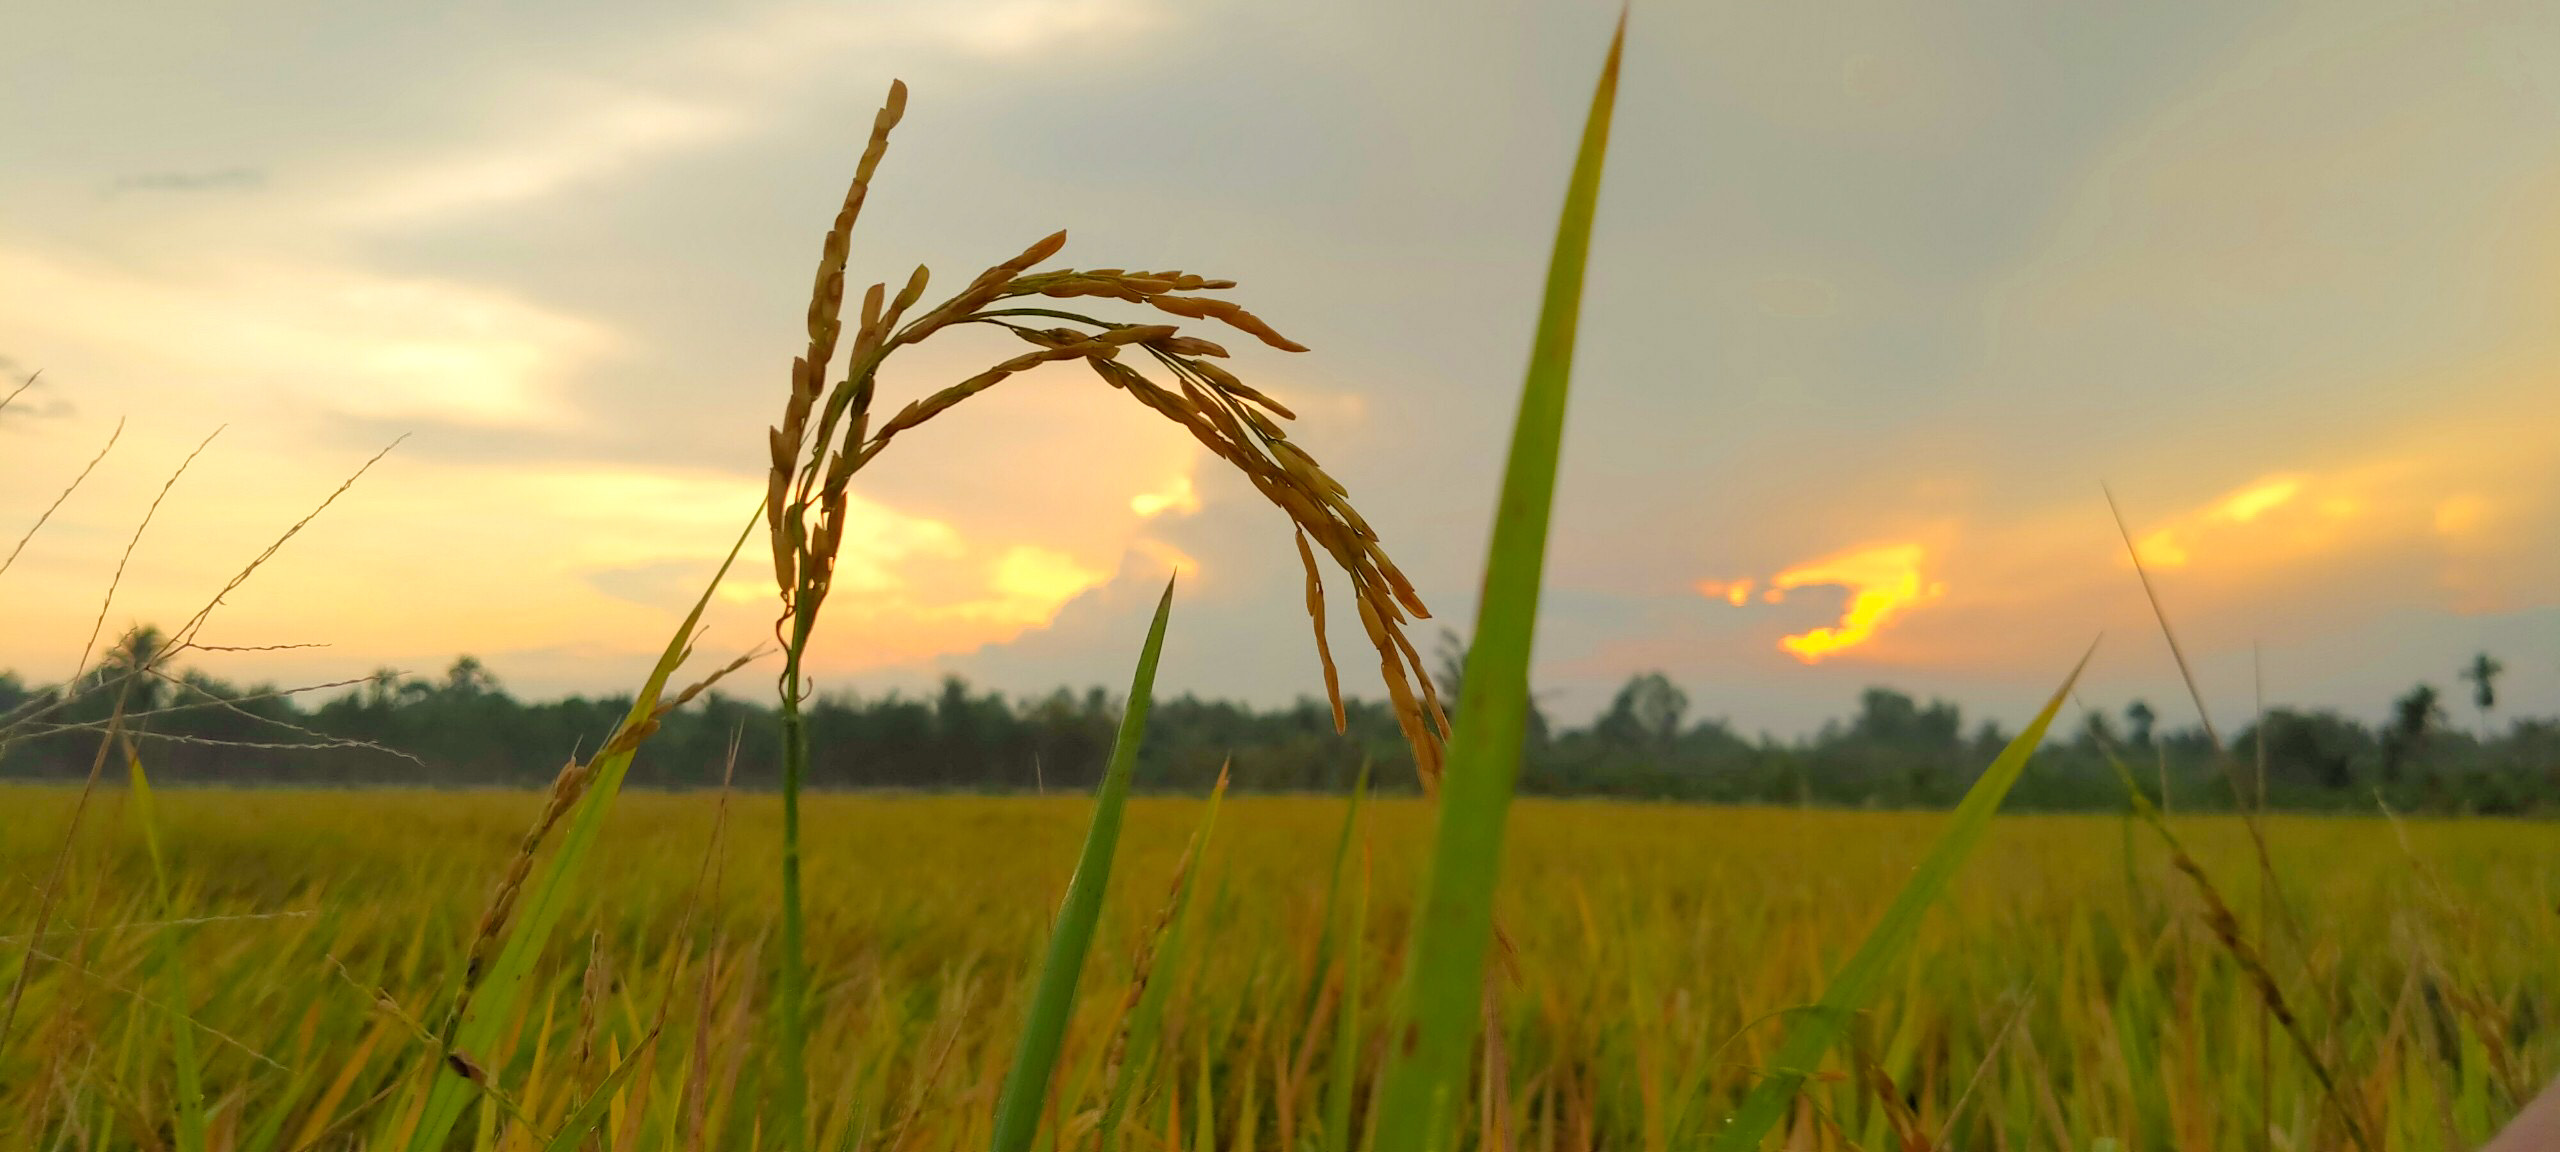 Làm mới tinh thần và đắm mình vào những cánh đồng lúa sẽ đem lại cảm giác thư giãn cho bạn. Hãy thưởng thức những hình ảnh về cánh đồng lúa đến từ những nơi đẹp nhất để có những trải nghiệm đầy màu sắc và đồng cảm.